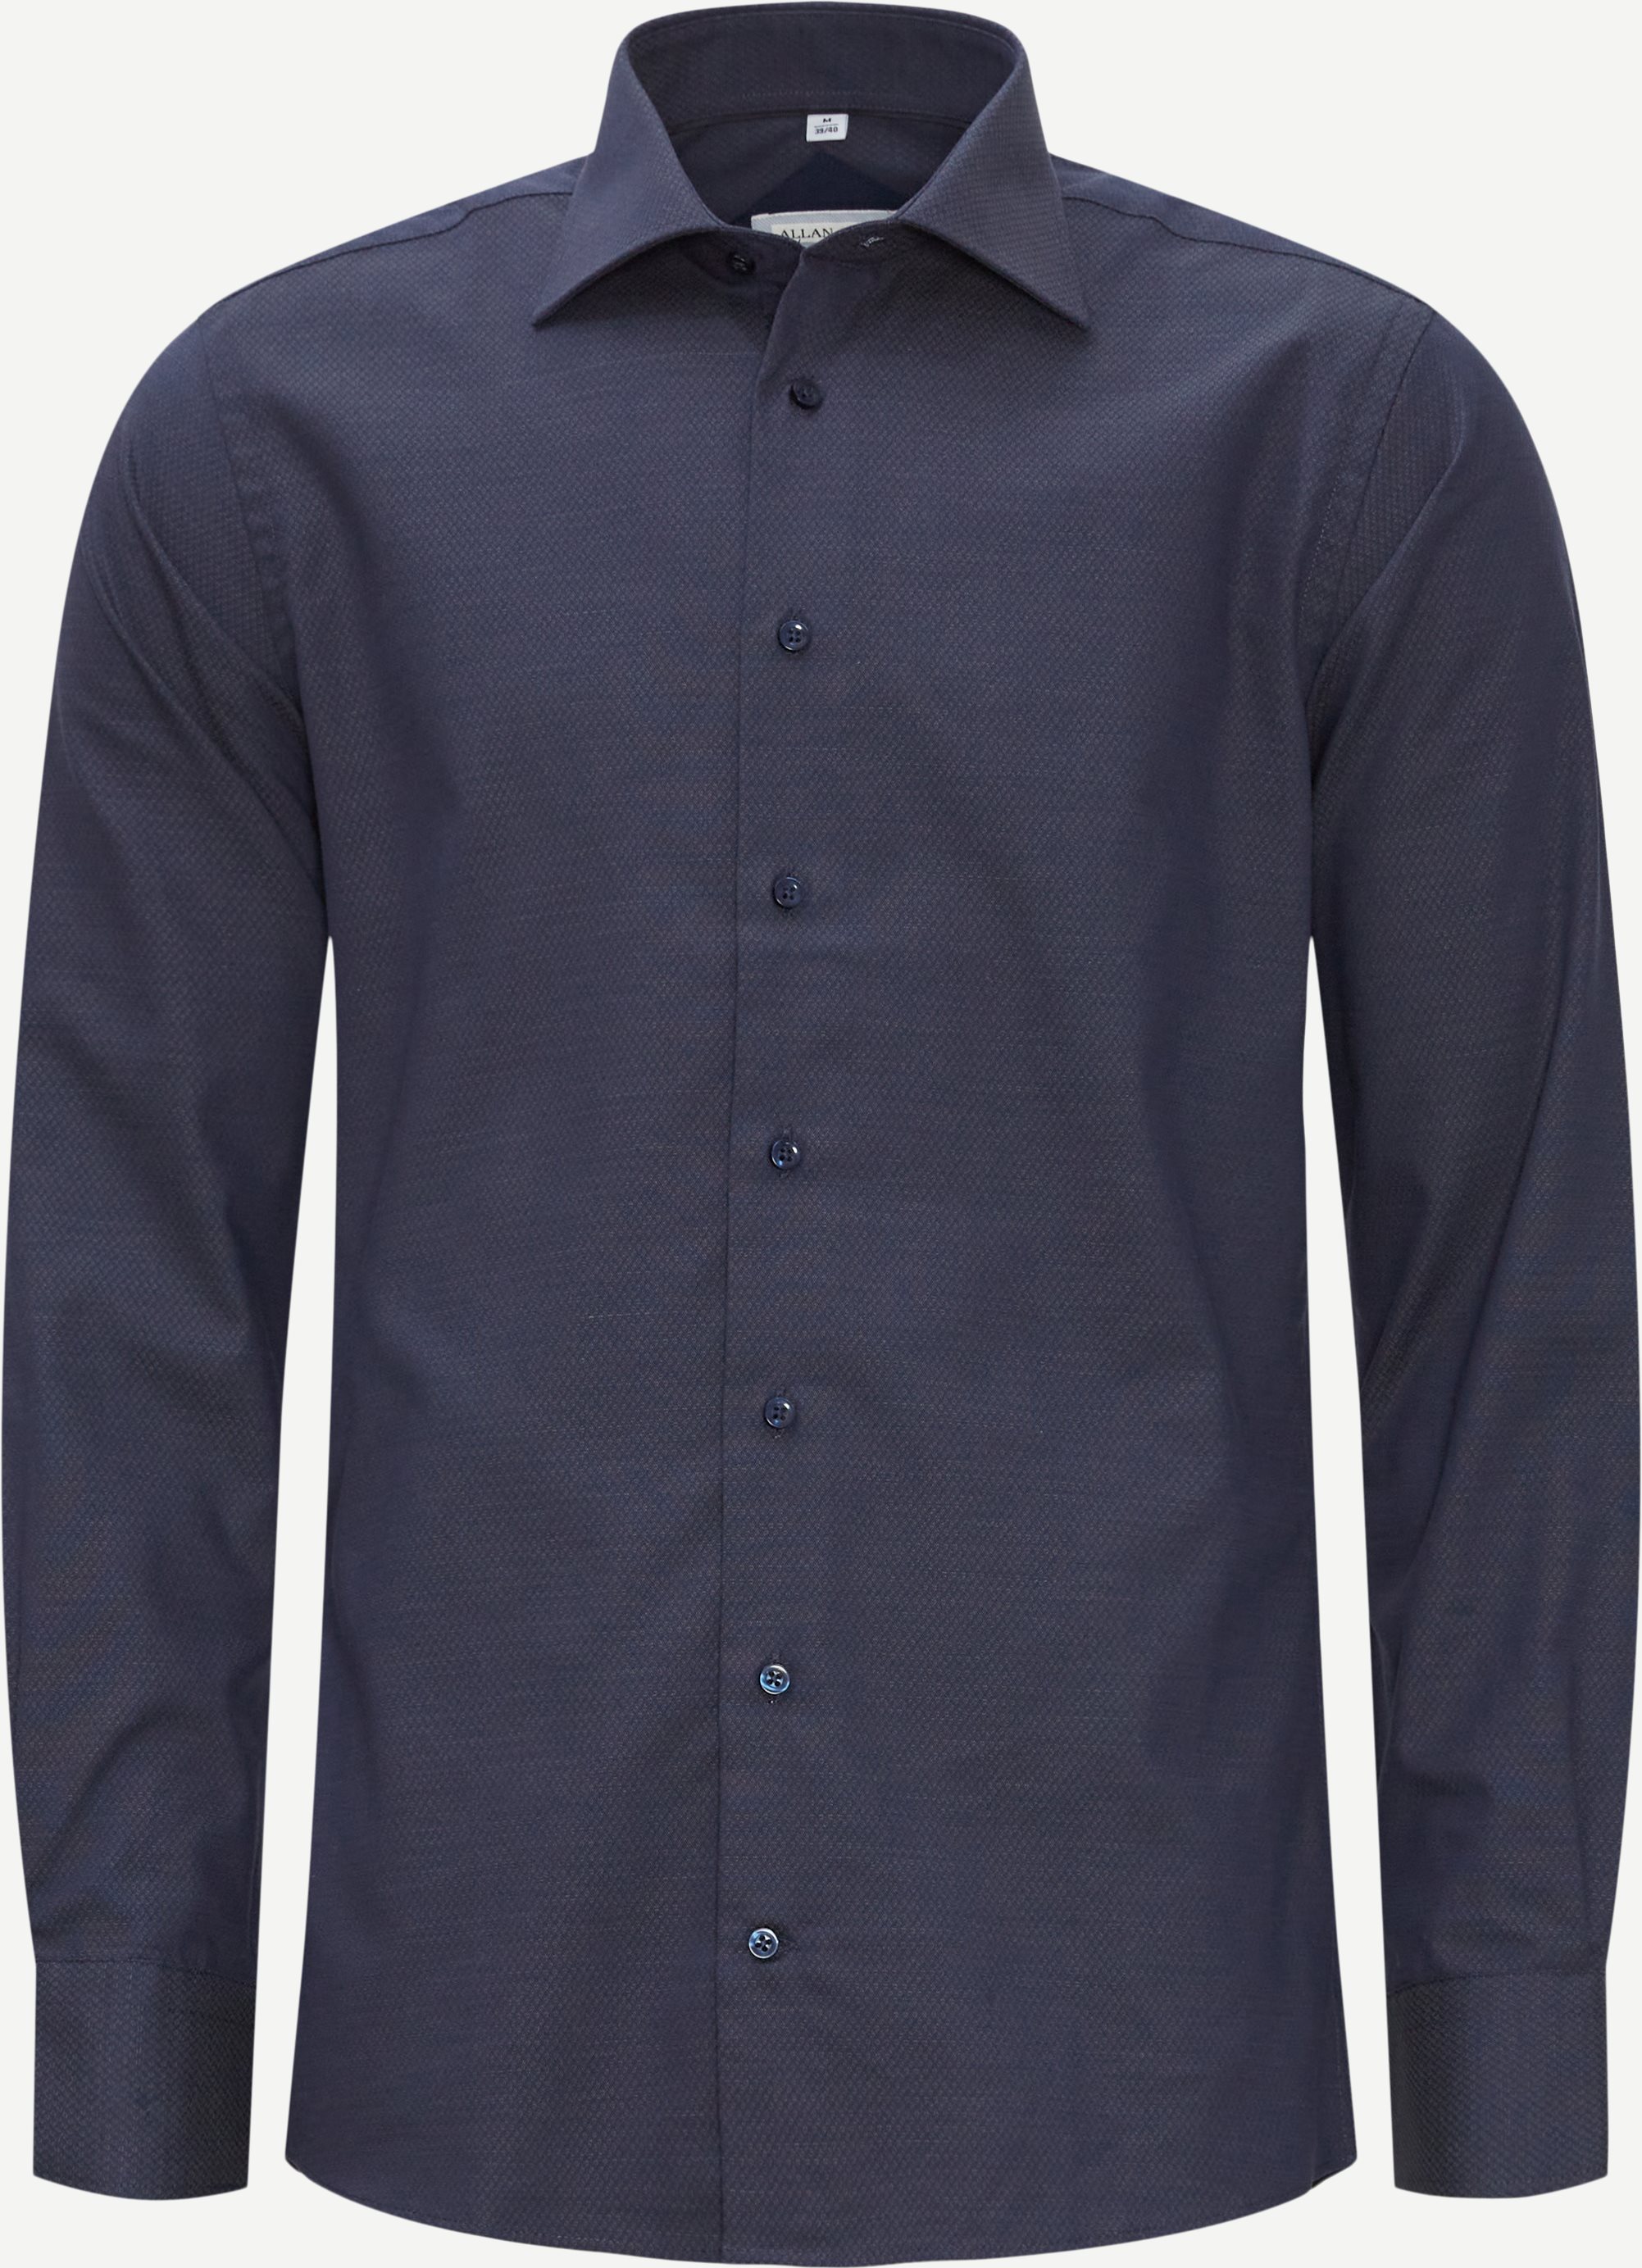 Oldham Skjorte - Skjorter - Blå